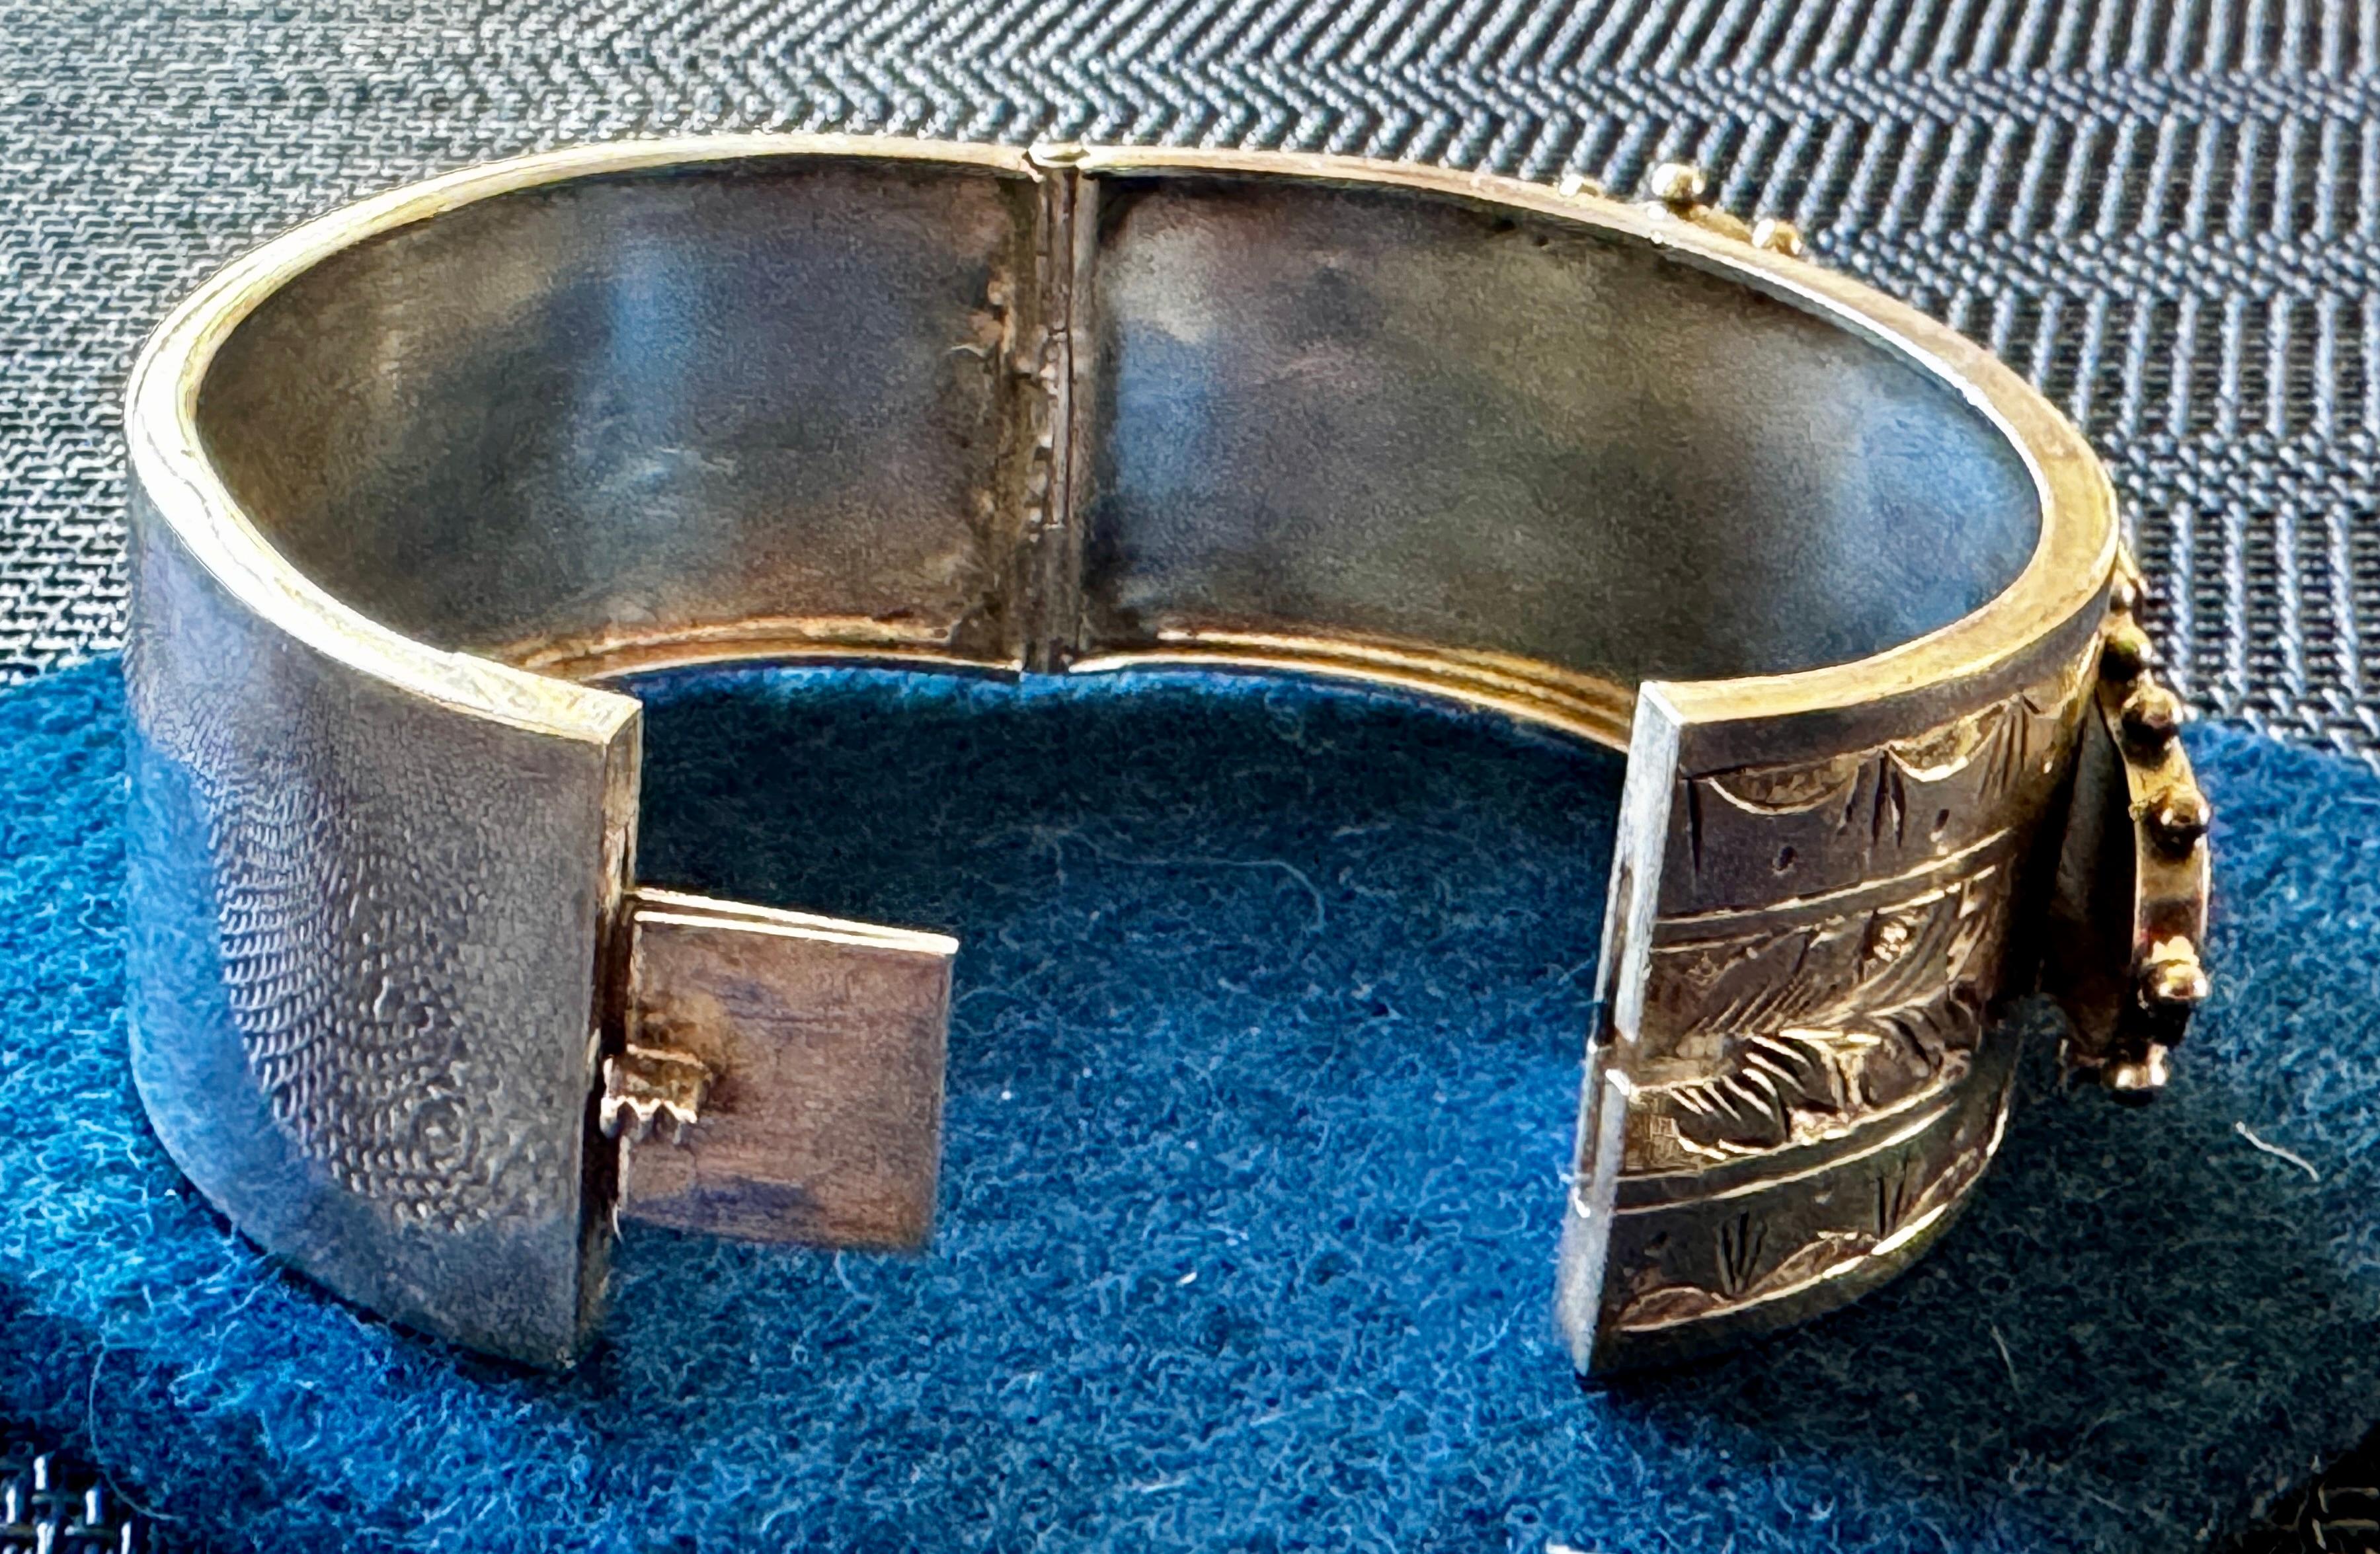 Britisches viktorianisches Silberschnalle-Armband aus Birmingham, vollständig gestempelt   

1